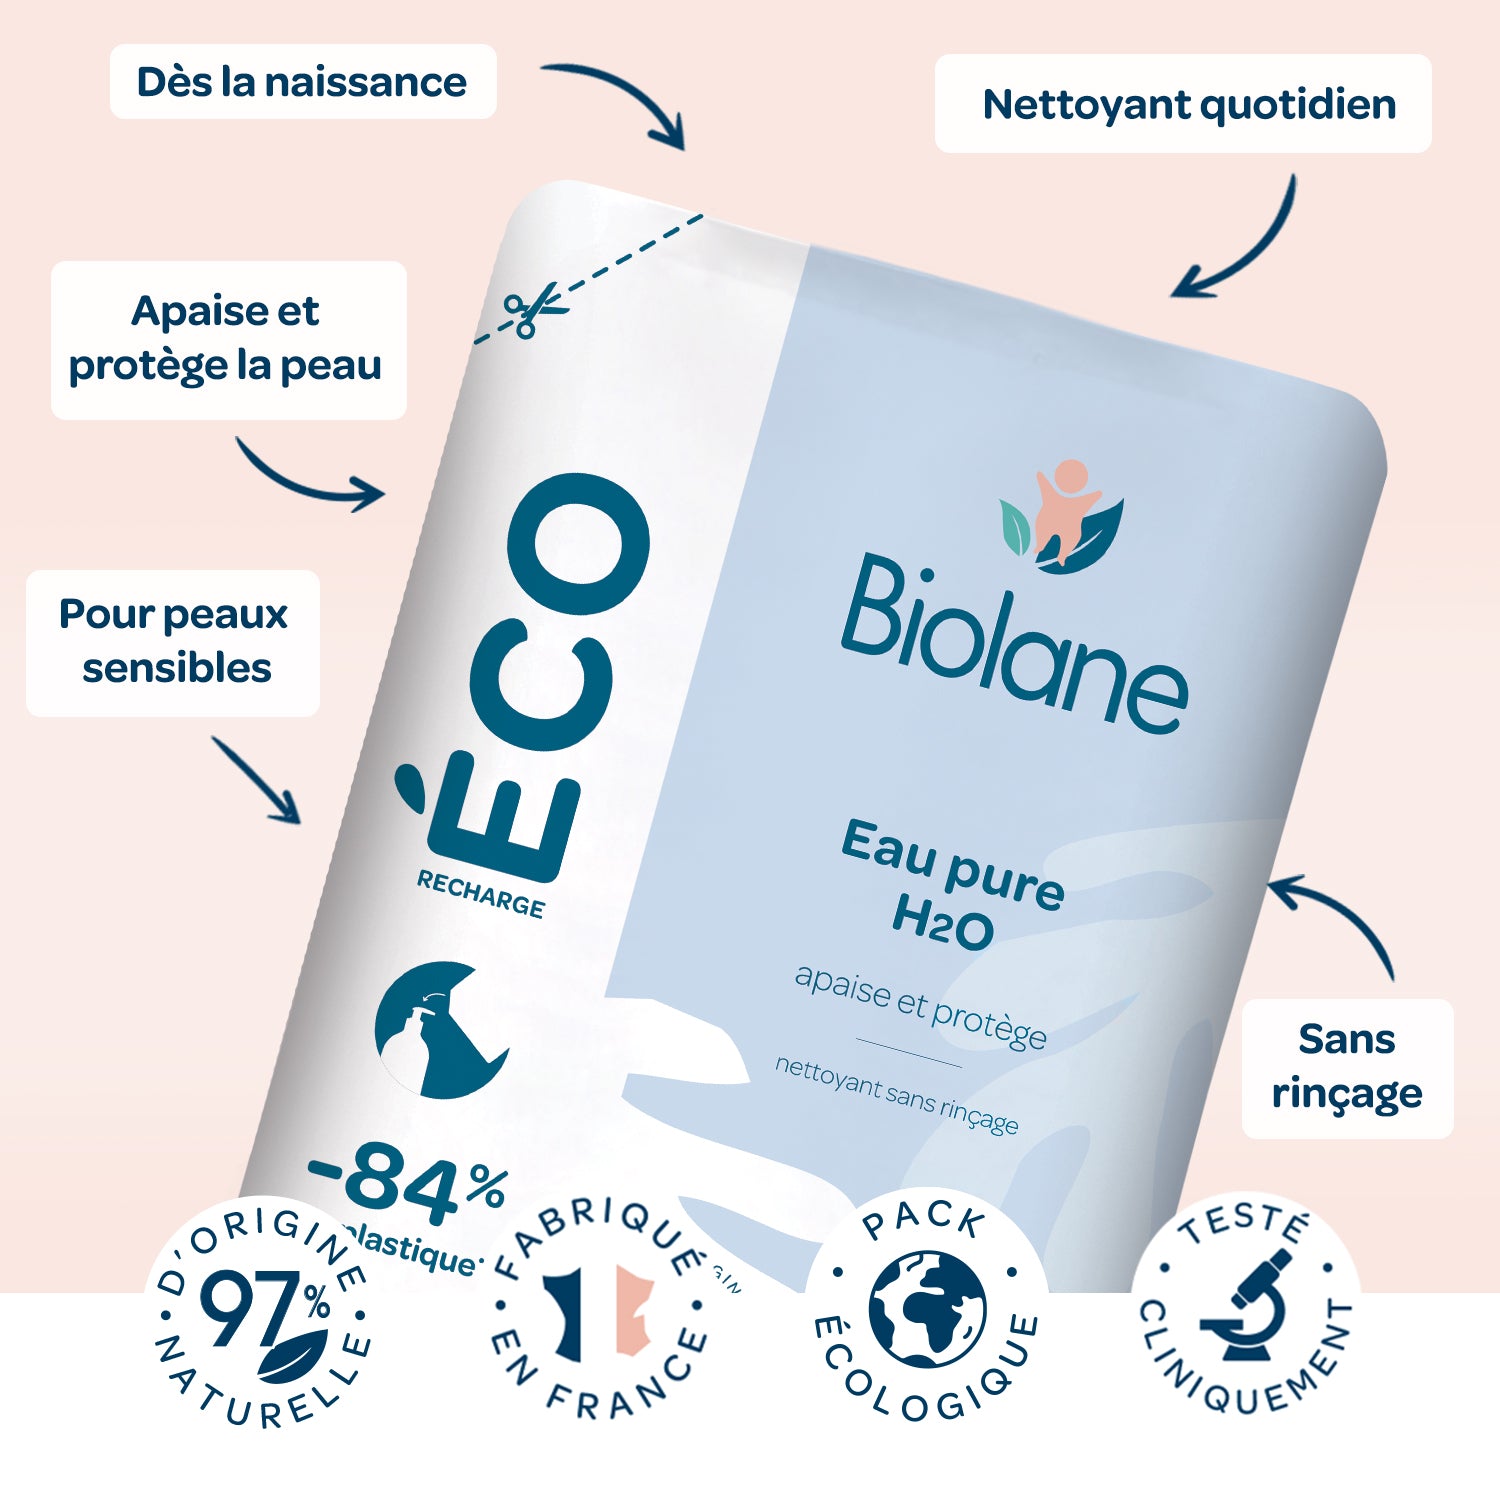 Biolane Eau pure - H2o - Apaise et protège - 750 ml à prix pas